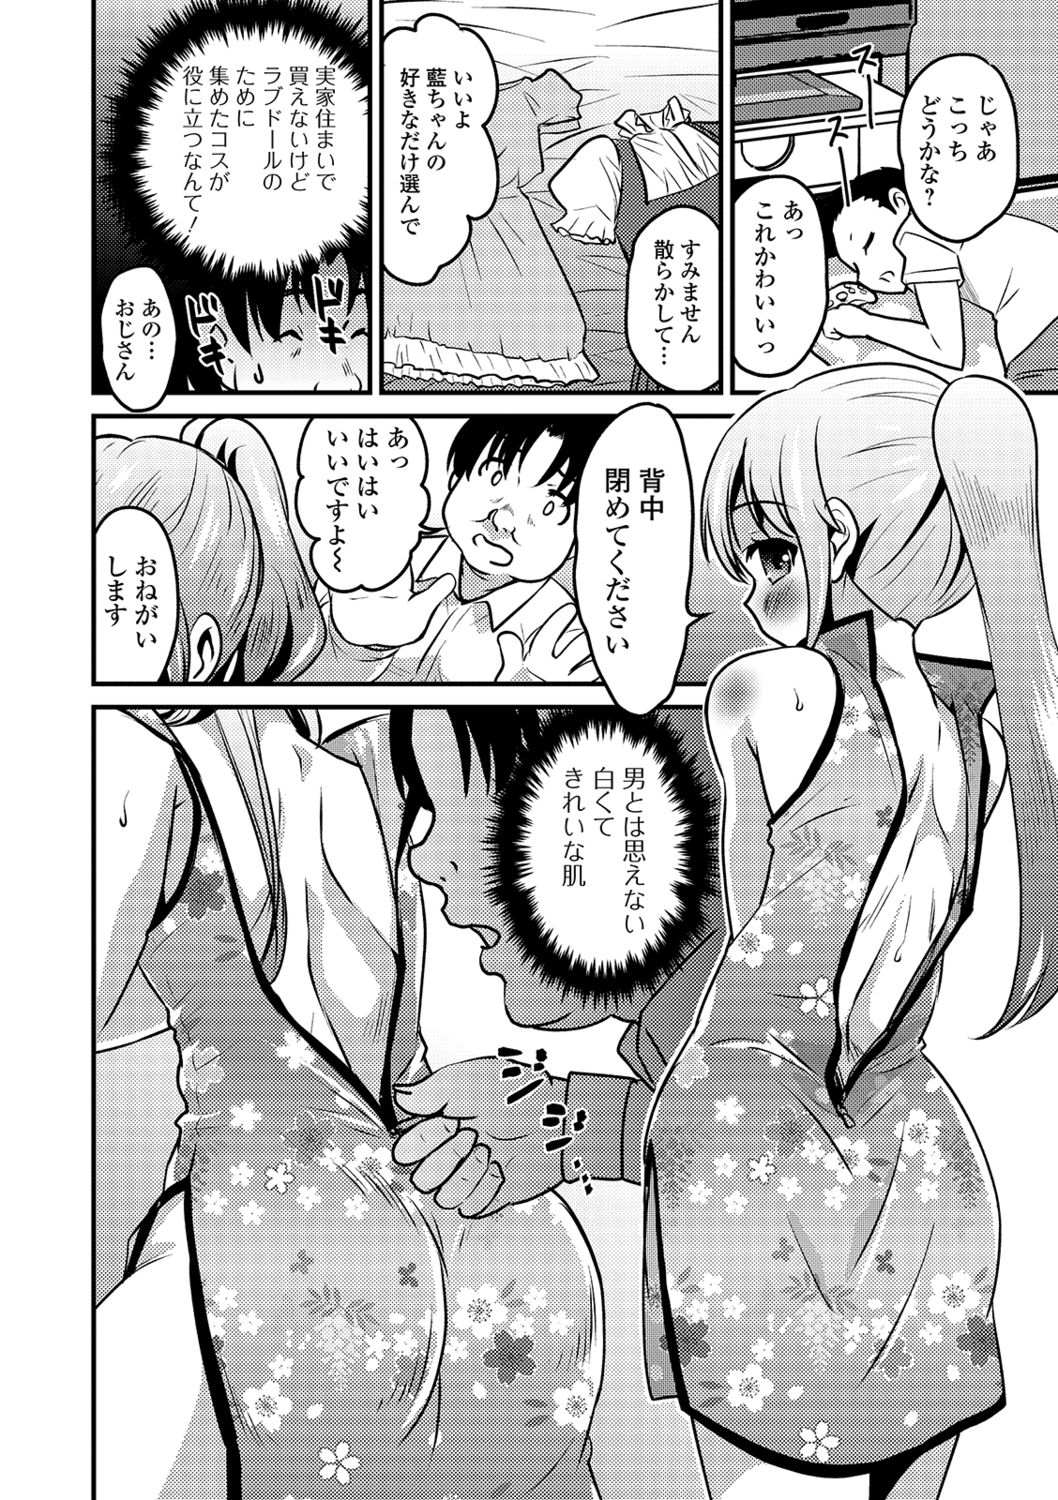 [Anthology] Gekkan Web Otoko no Ko-llection! S Vol. 41 [Digital] page 6 full